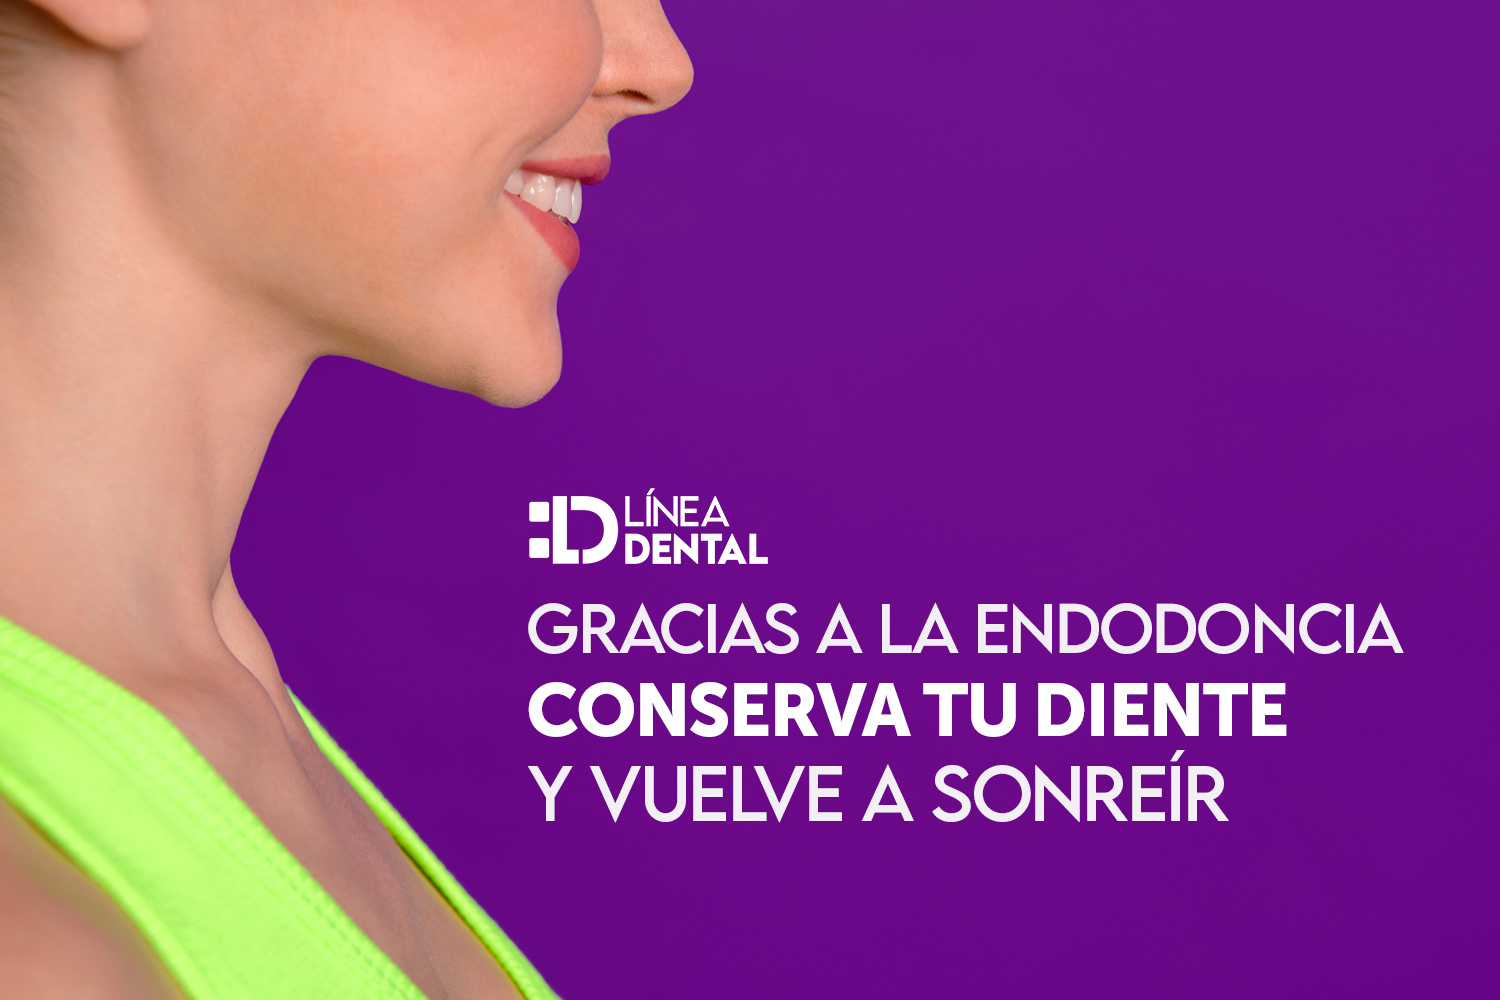 03-endodoncia-dentista-odontologo-linea-dental-ciudad-real-miguelturra